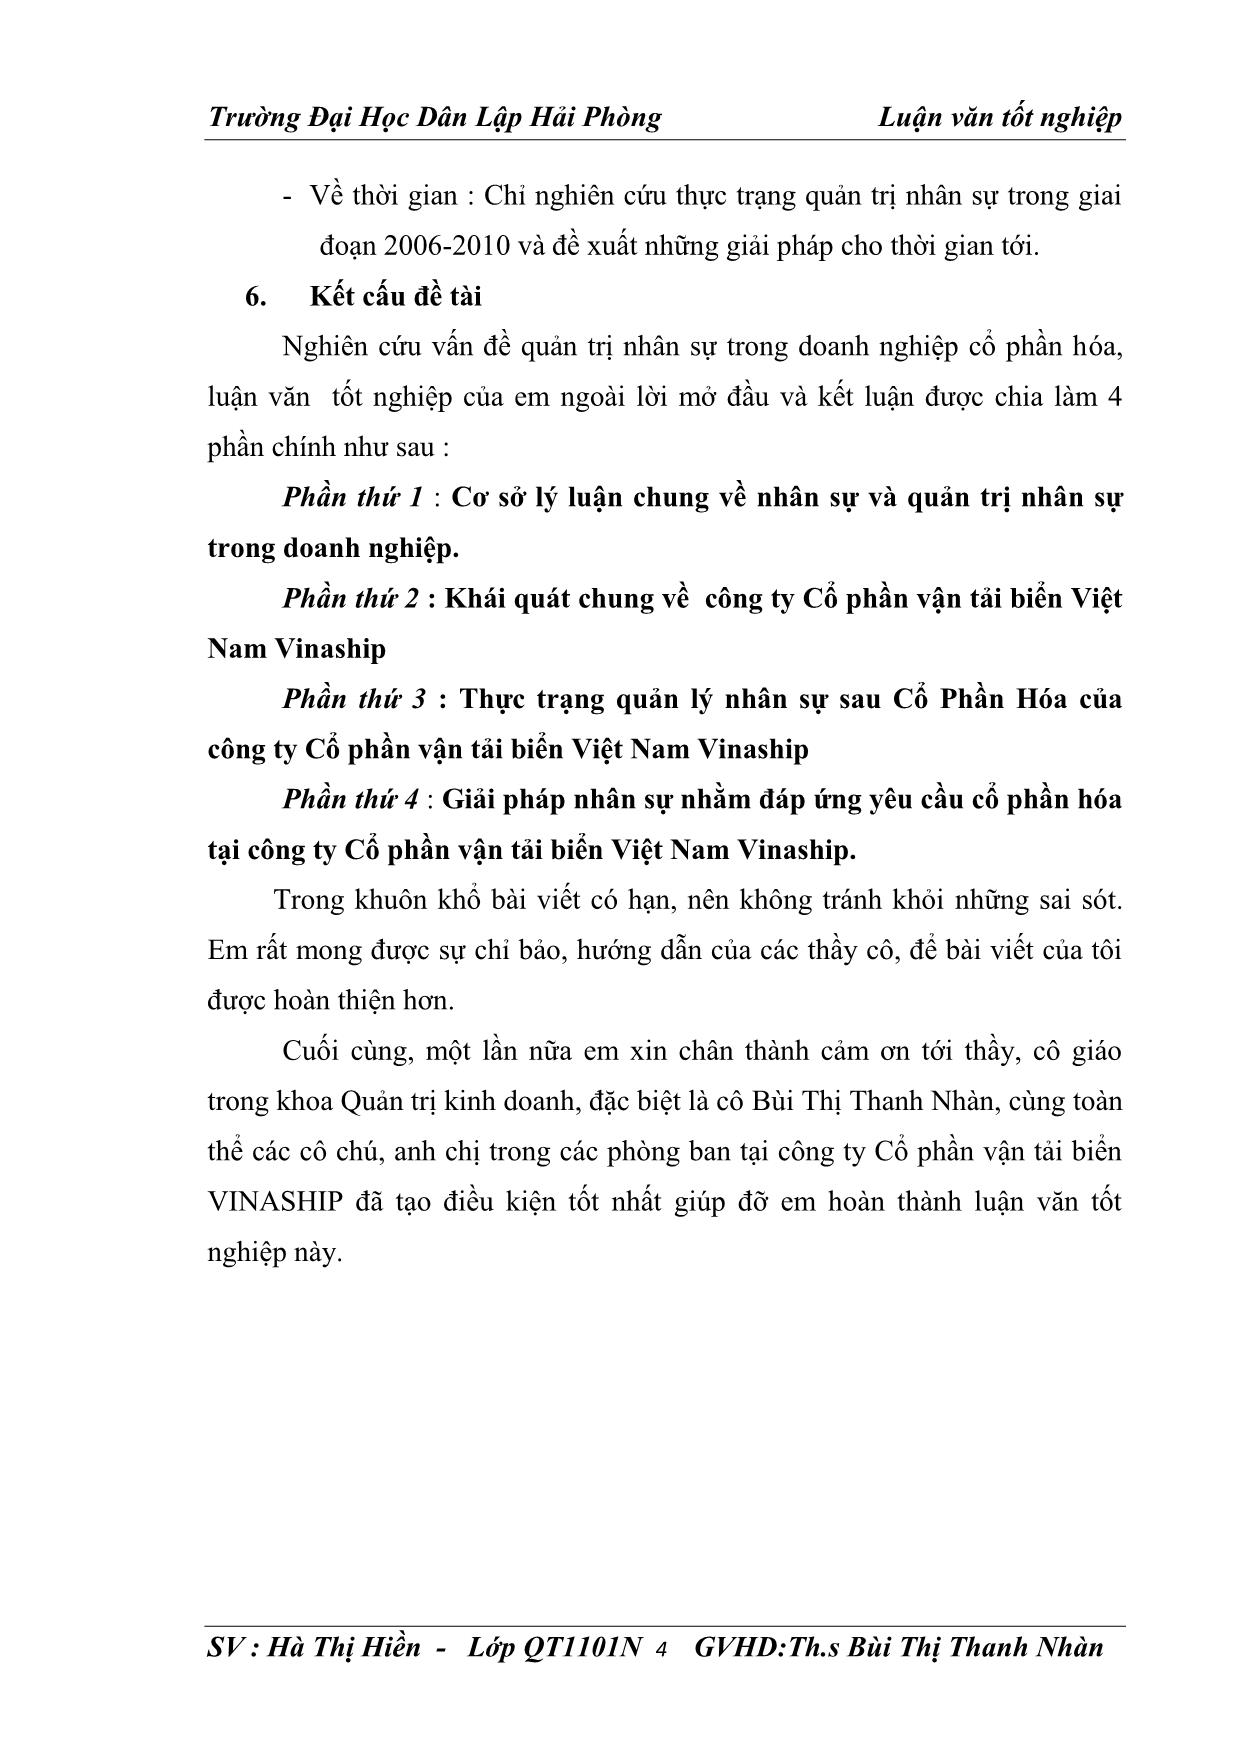 Luận văn Giải pháp nhân sự nhằm đáp ứng yêu cầu cổ phần hóa tại công ty cổ phần vận tải biển Việt Nam VinaShip trang 5